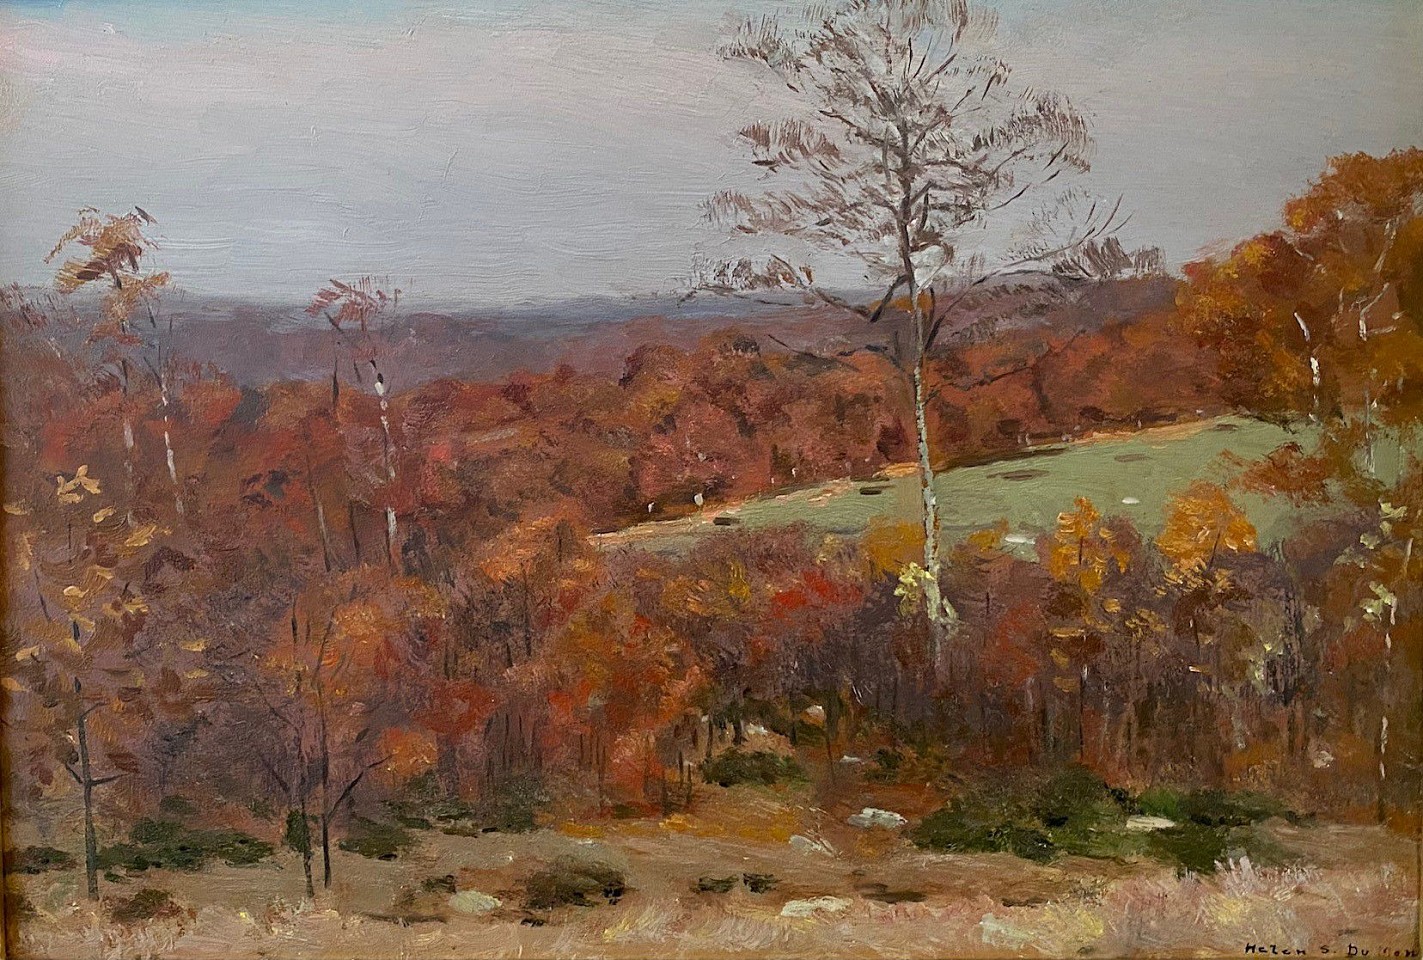 Helen Savier DuMond, Autumn
oil on panel, 10"" x 14""
EWP322.10
$1,500